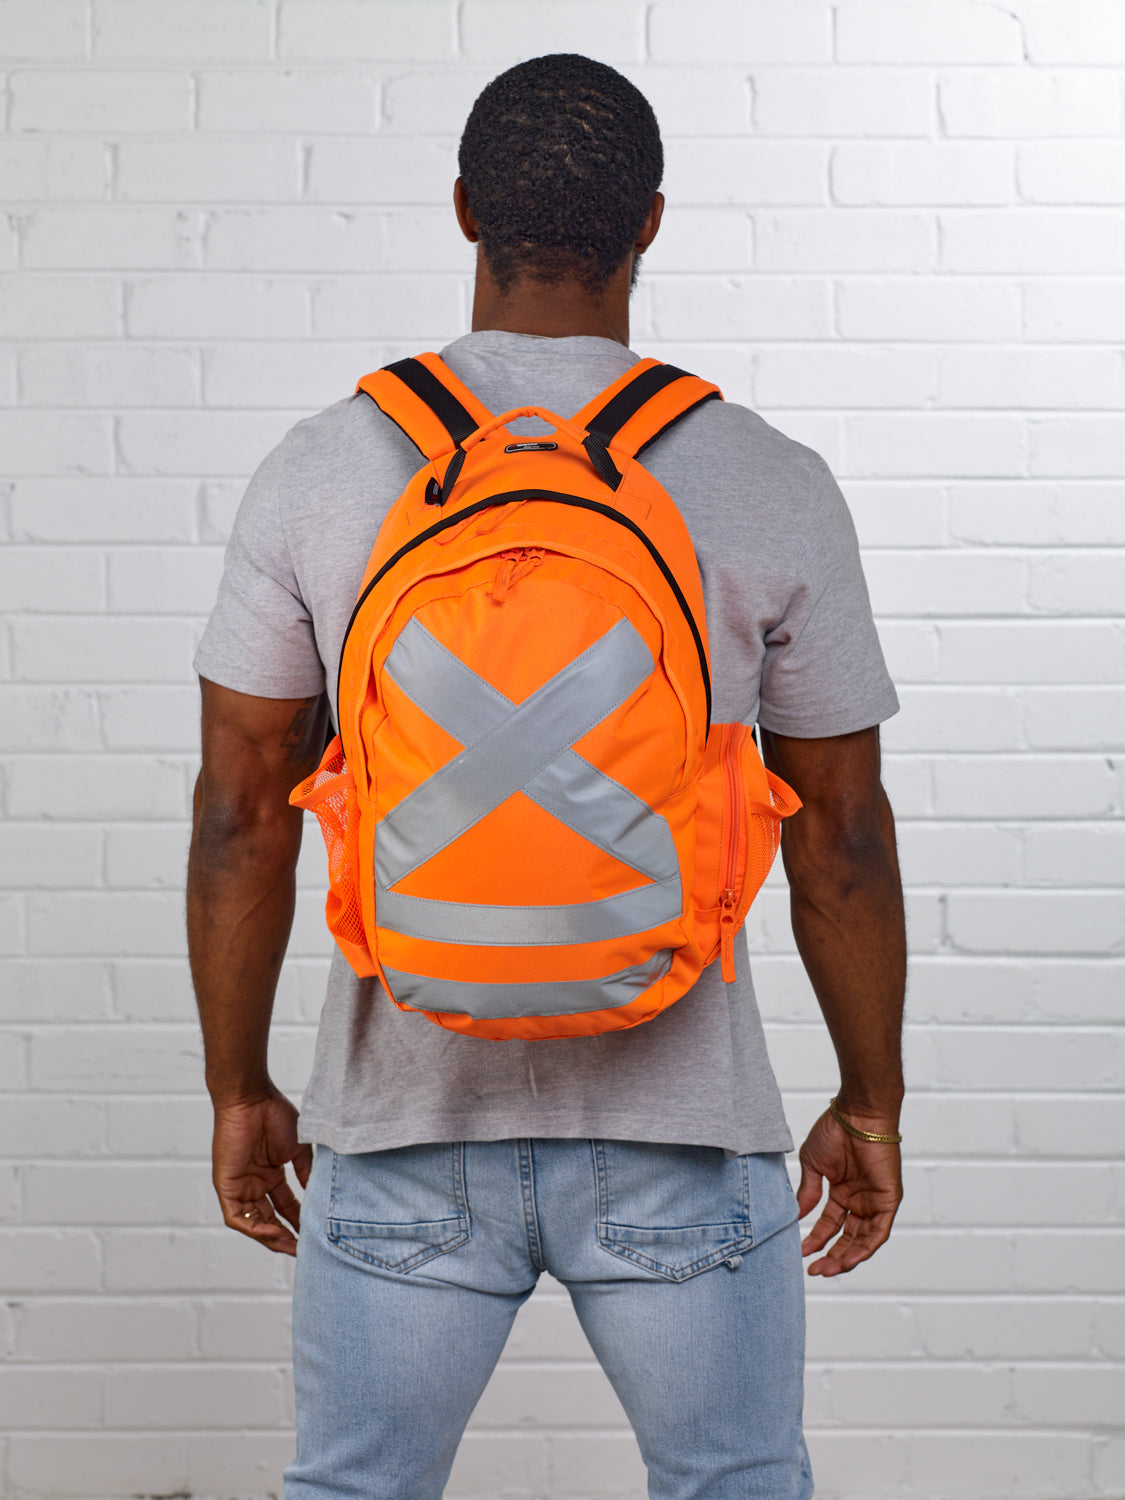 Caribee Calibre Hi Vis Orange safety backpack